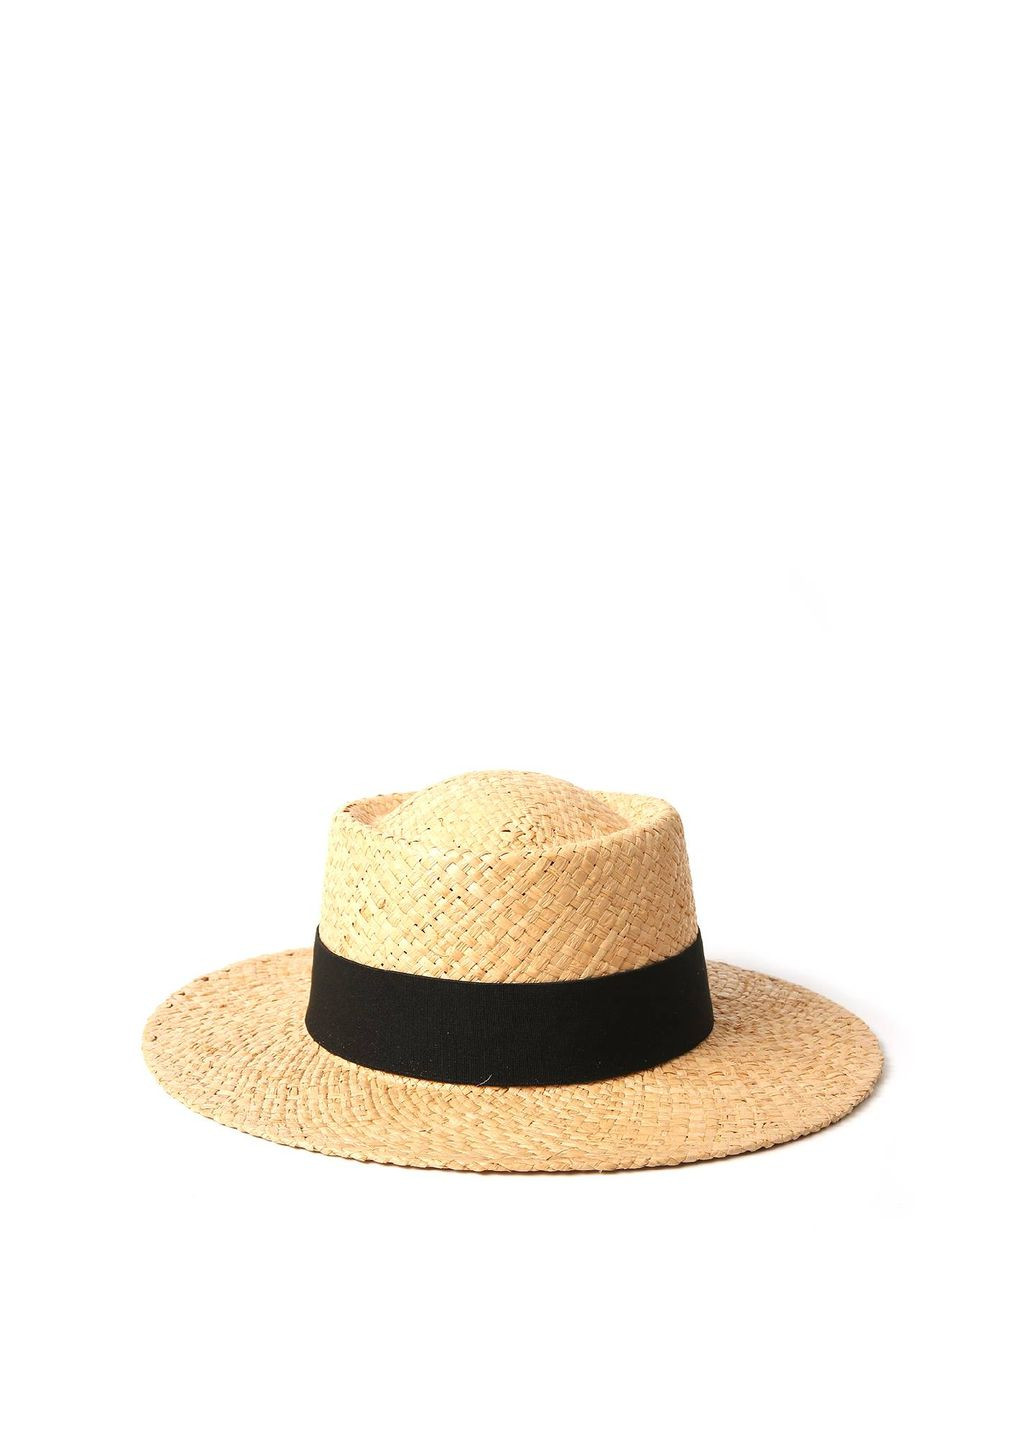 Шляпа порк-пай мужская рафия желтая ESME 844-149 LuckyLOOK 844-149м (292668869)